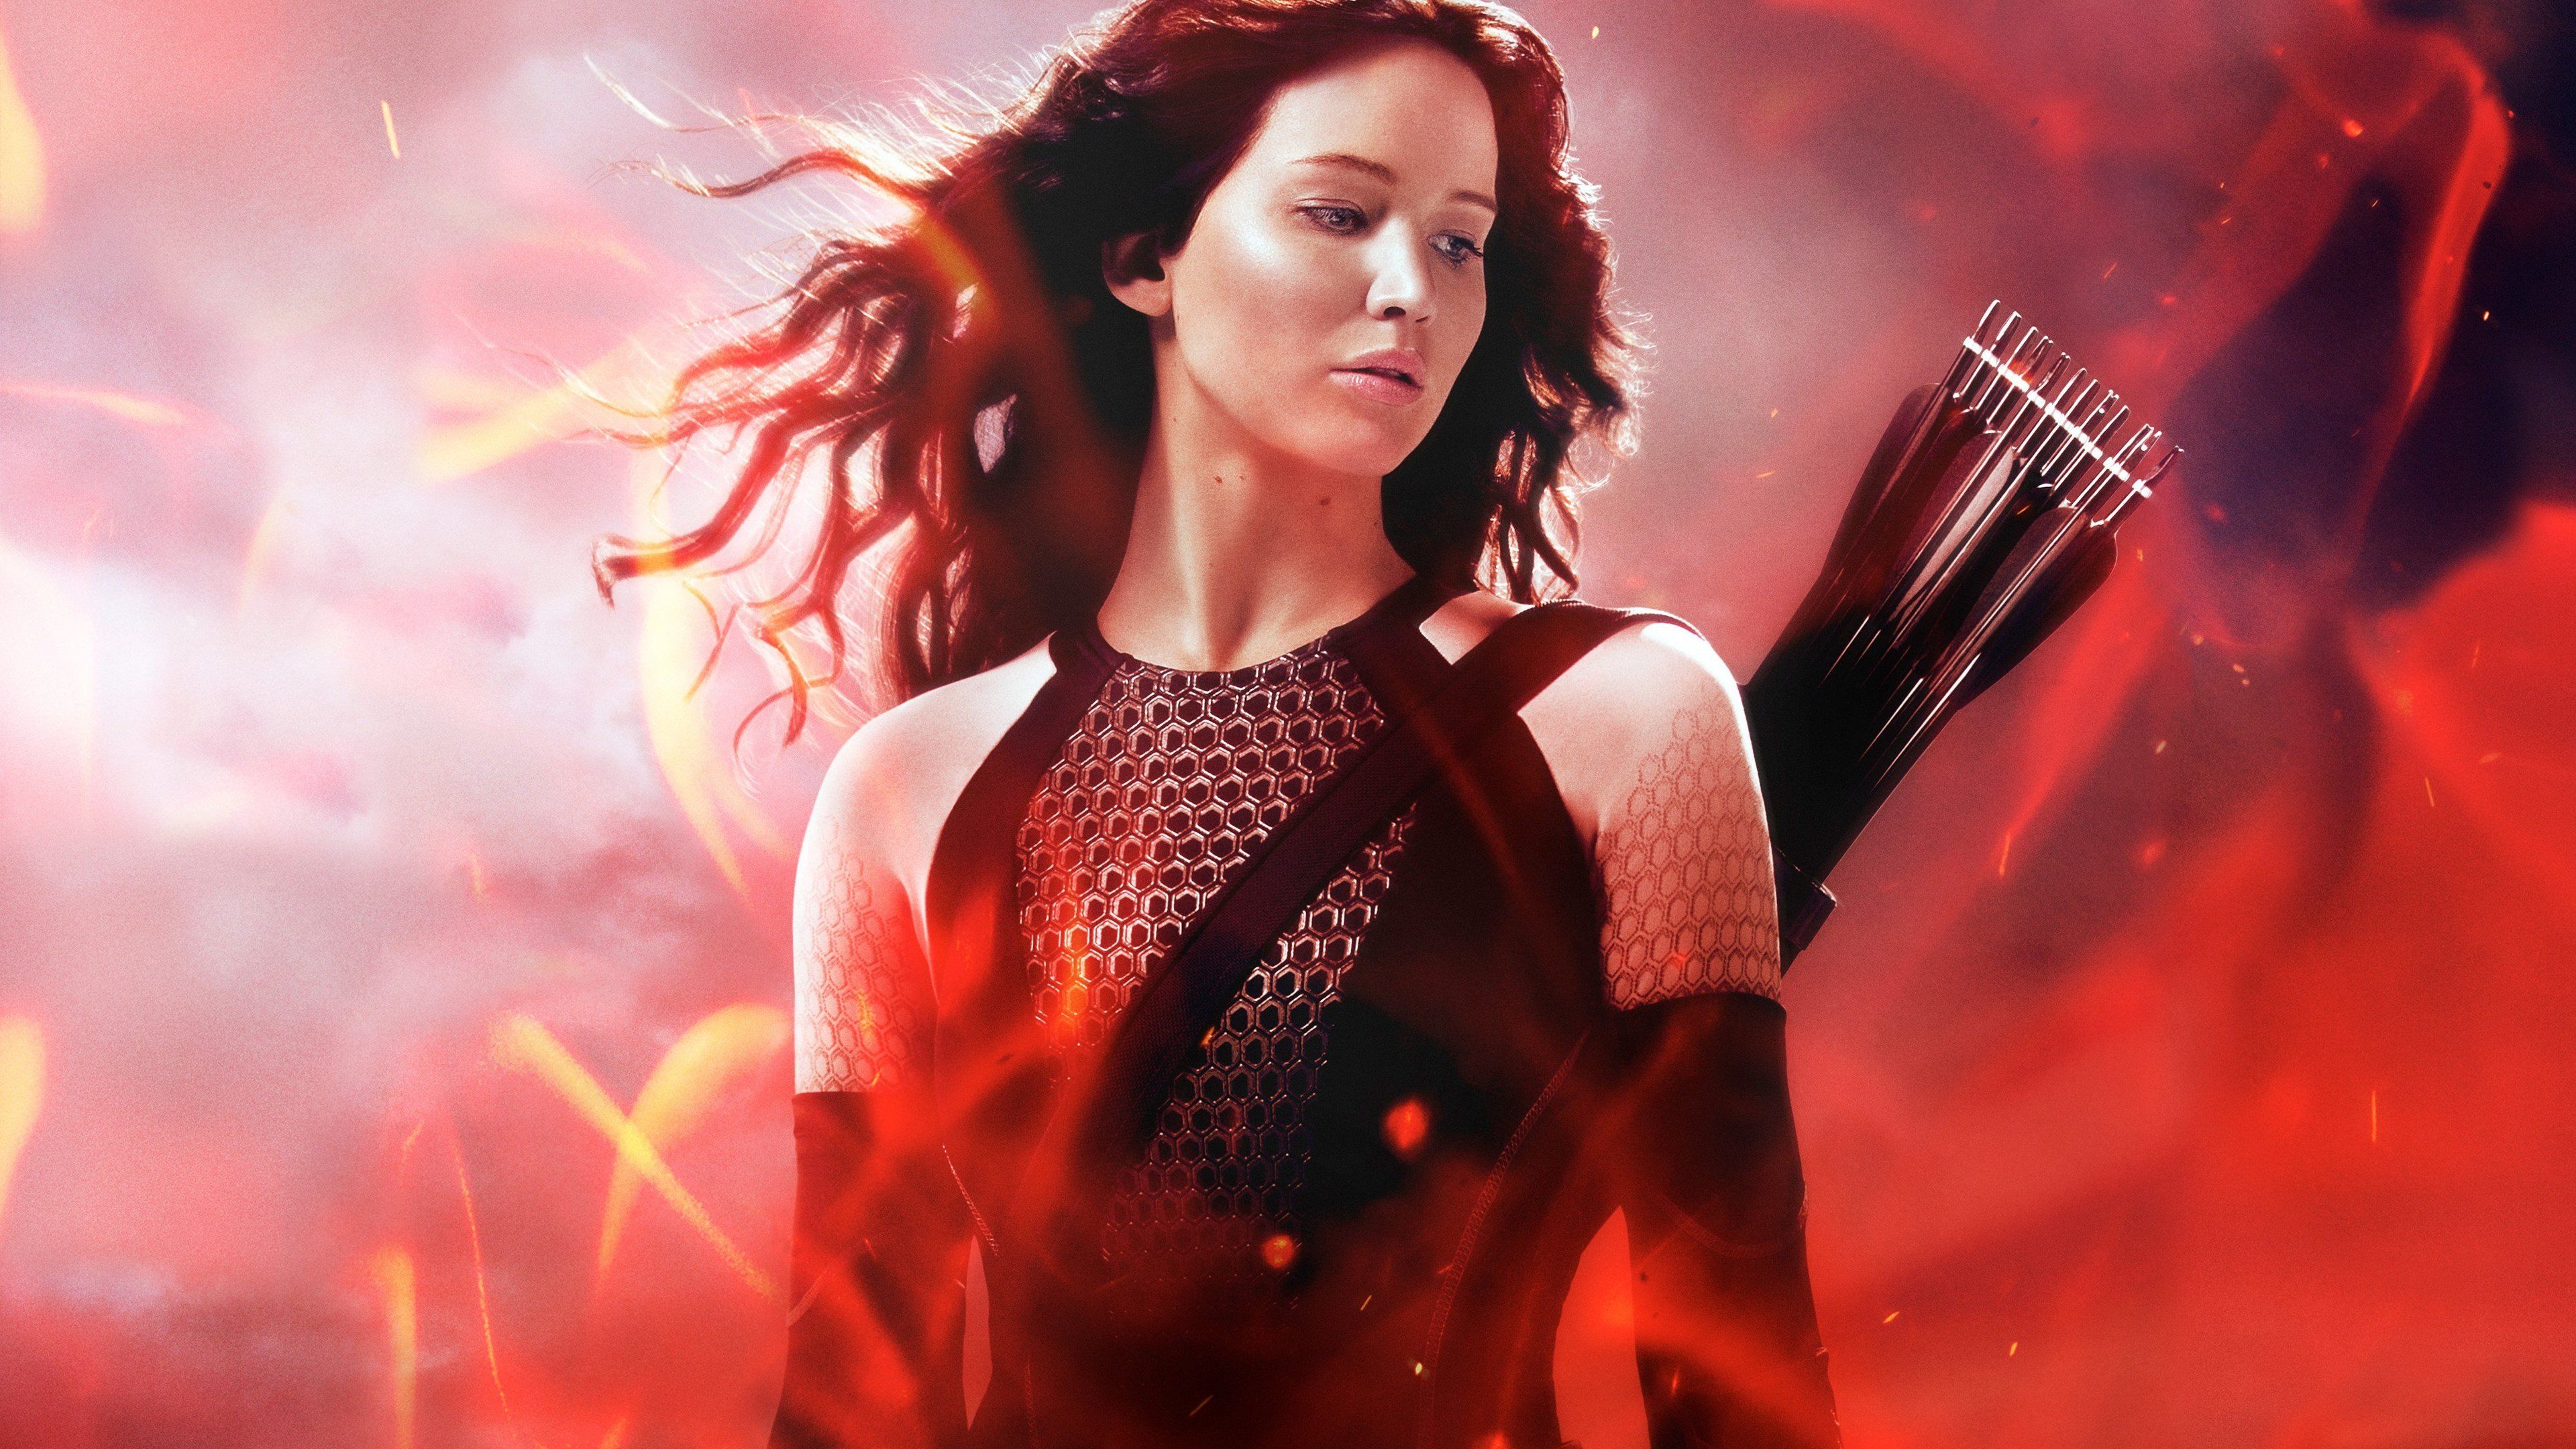 The Hunger Games Wallpaper, Movies Wallpaper, Jennifer Everdeen Wallpaper Full Body